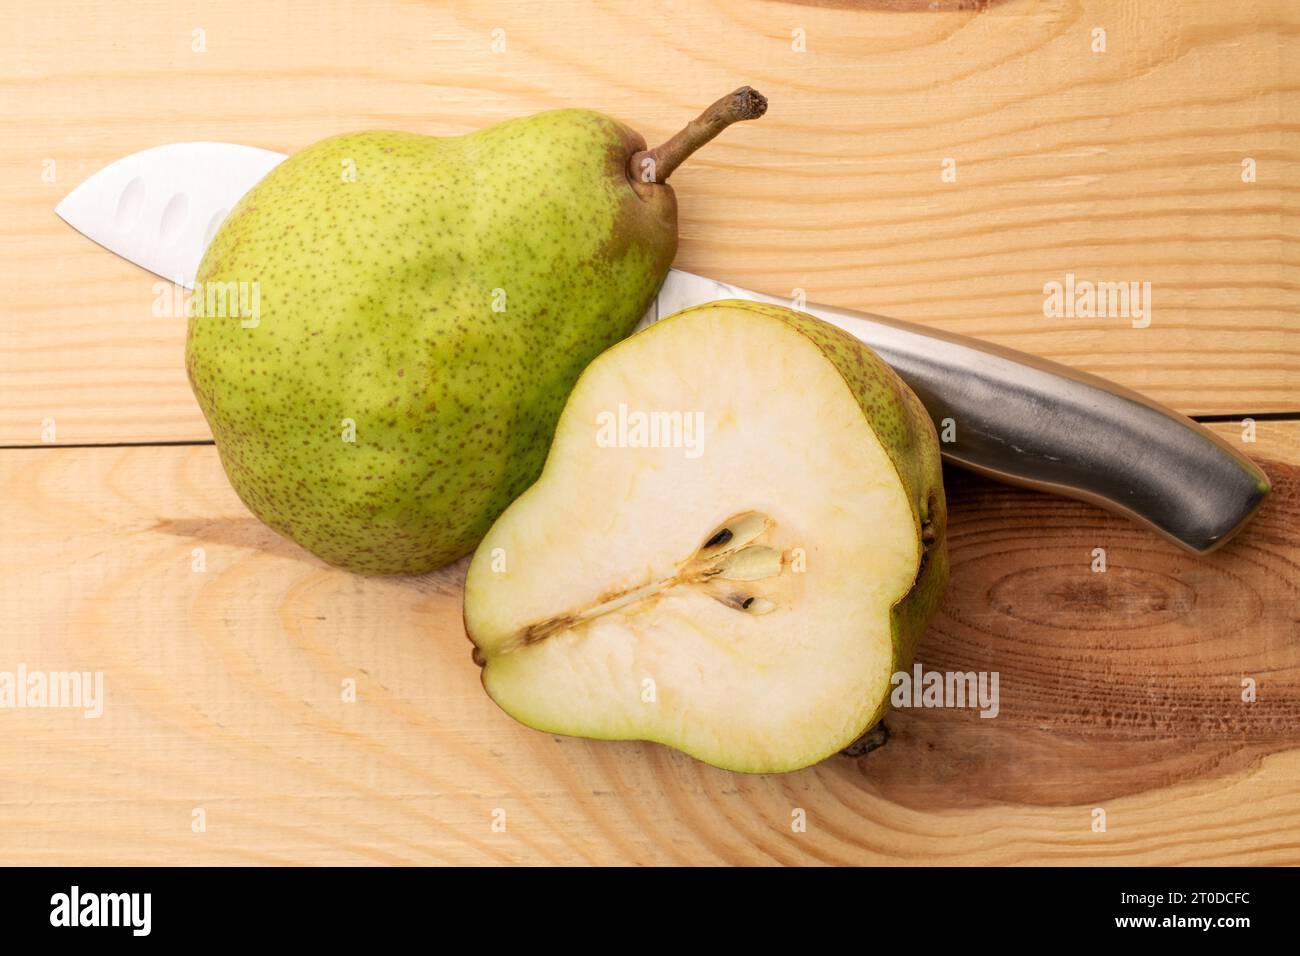 Deux moitiés d'une poire verte biologique avec un couteau en métal, gros plan, sur une table en bois, vue de dessus. Banque D'Images